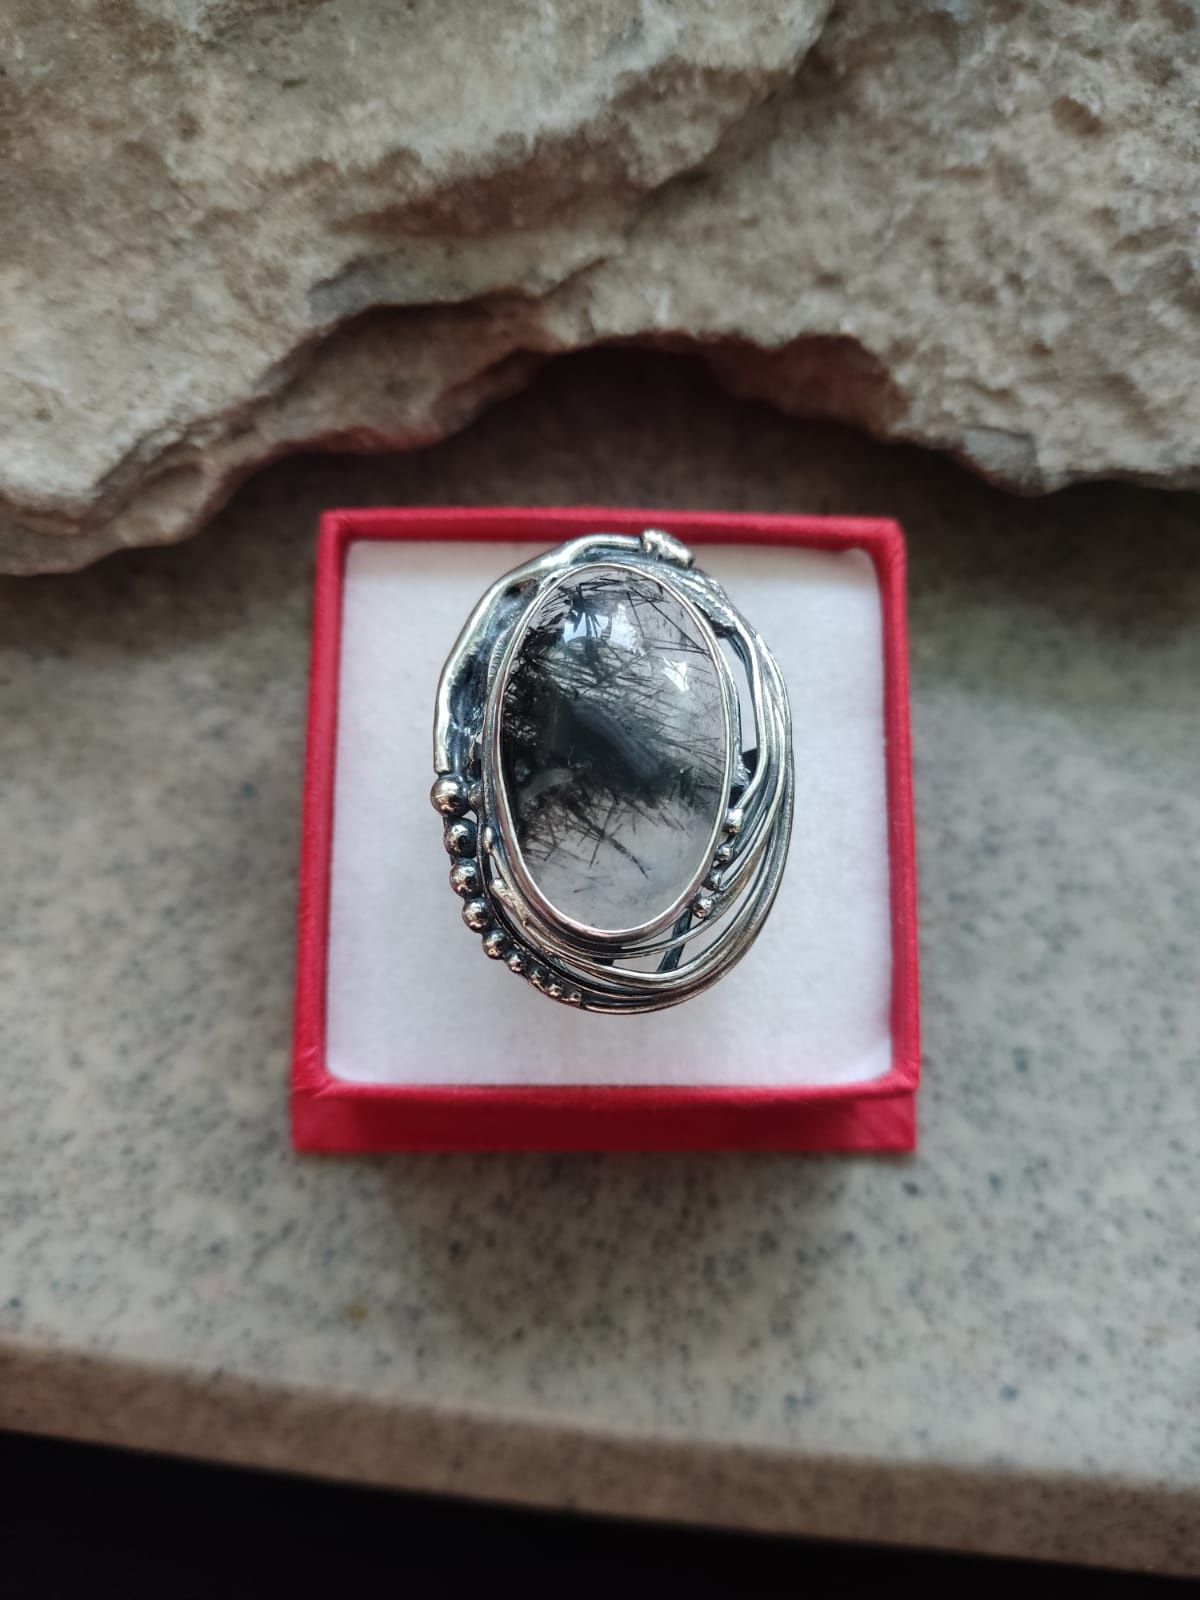 Srebrny duży pierścionek z kwarcem turmalinowym autorski srebro